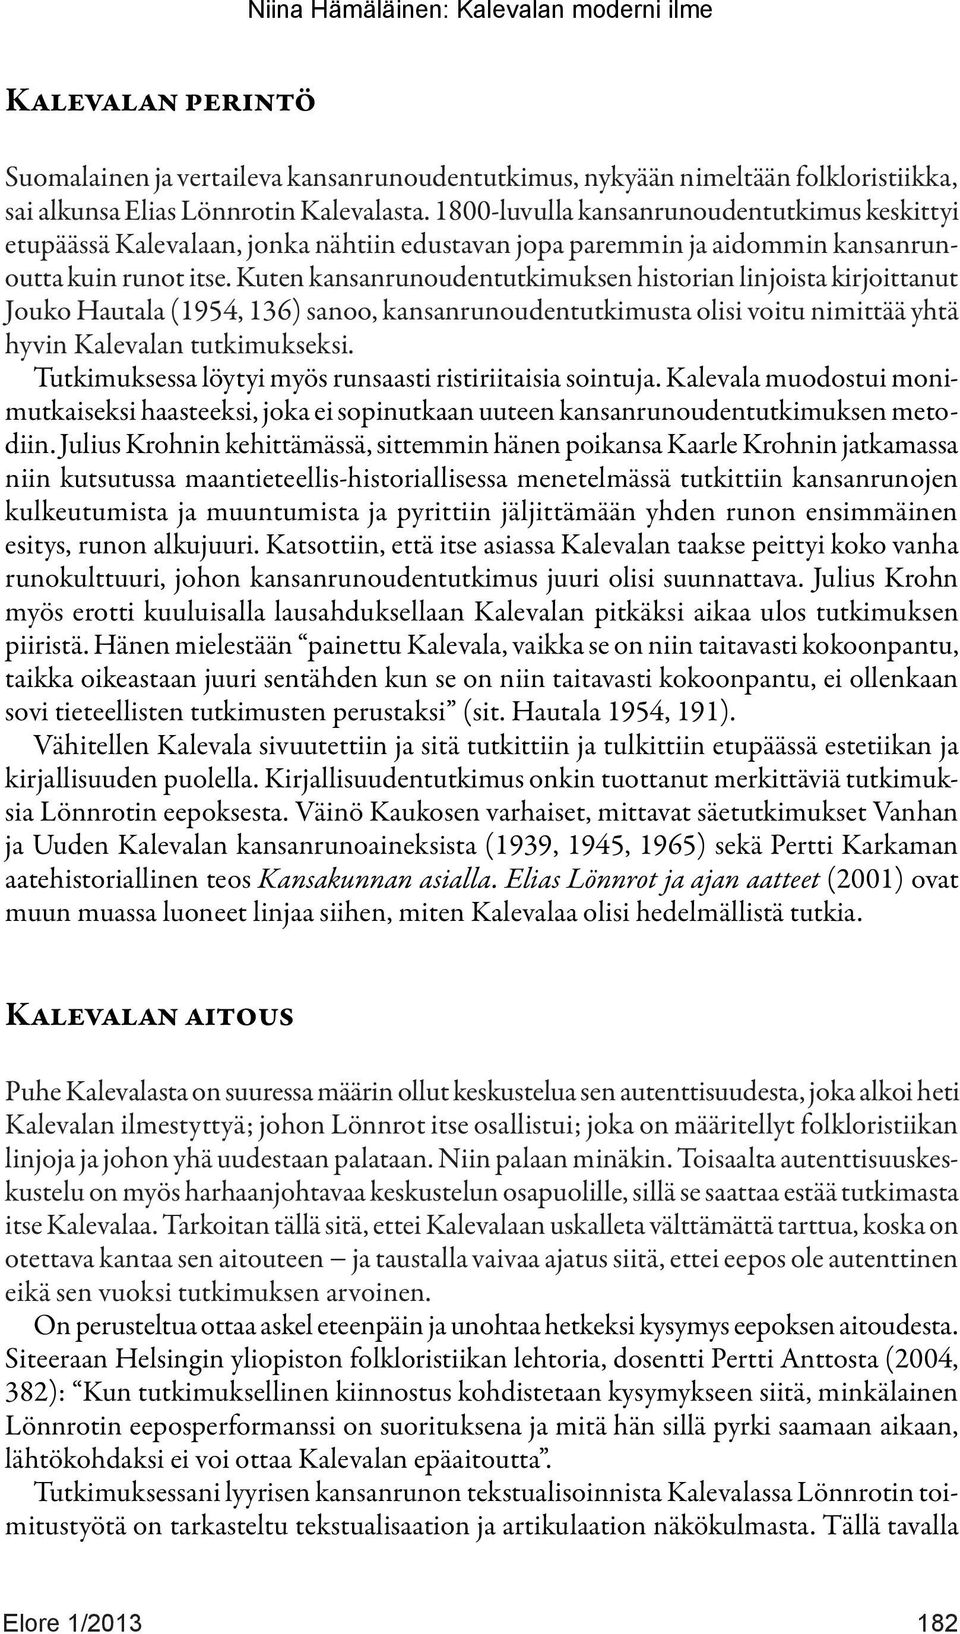 Kuten kansanrunoudentutkimuksen historian linjoista kirjoittanut Jouko Hautala (1954, 136) sanoo, kansanrunoudentutkimusta olisi voitu nimittää yhtä hyvin Kalevalan tutkimukseksi.